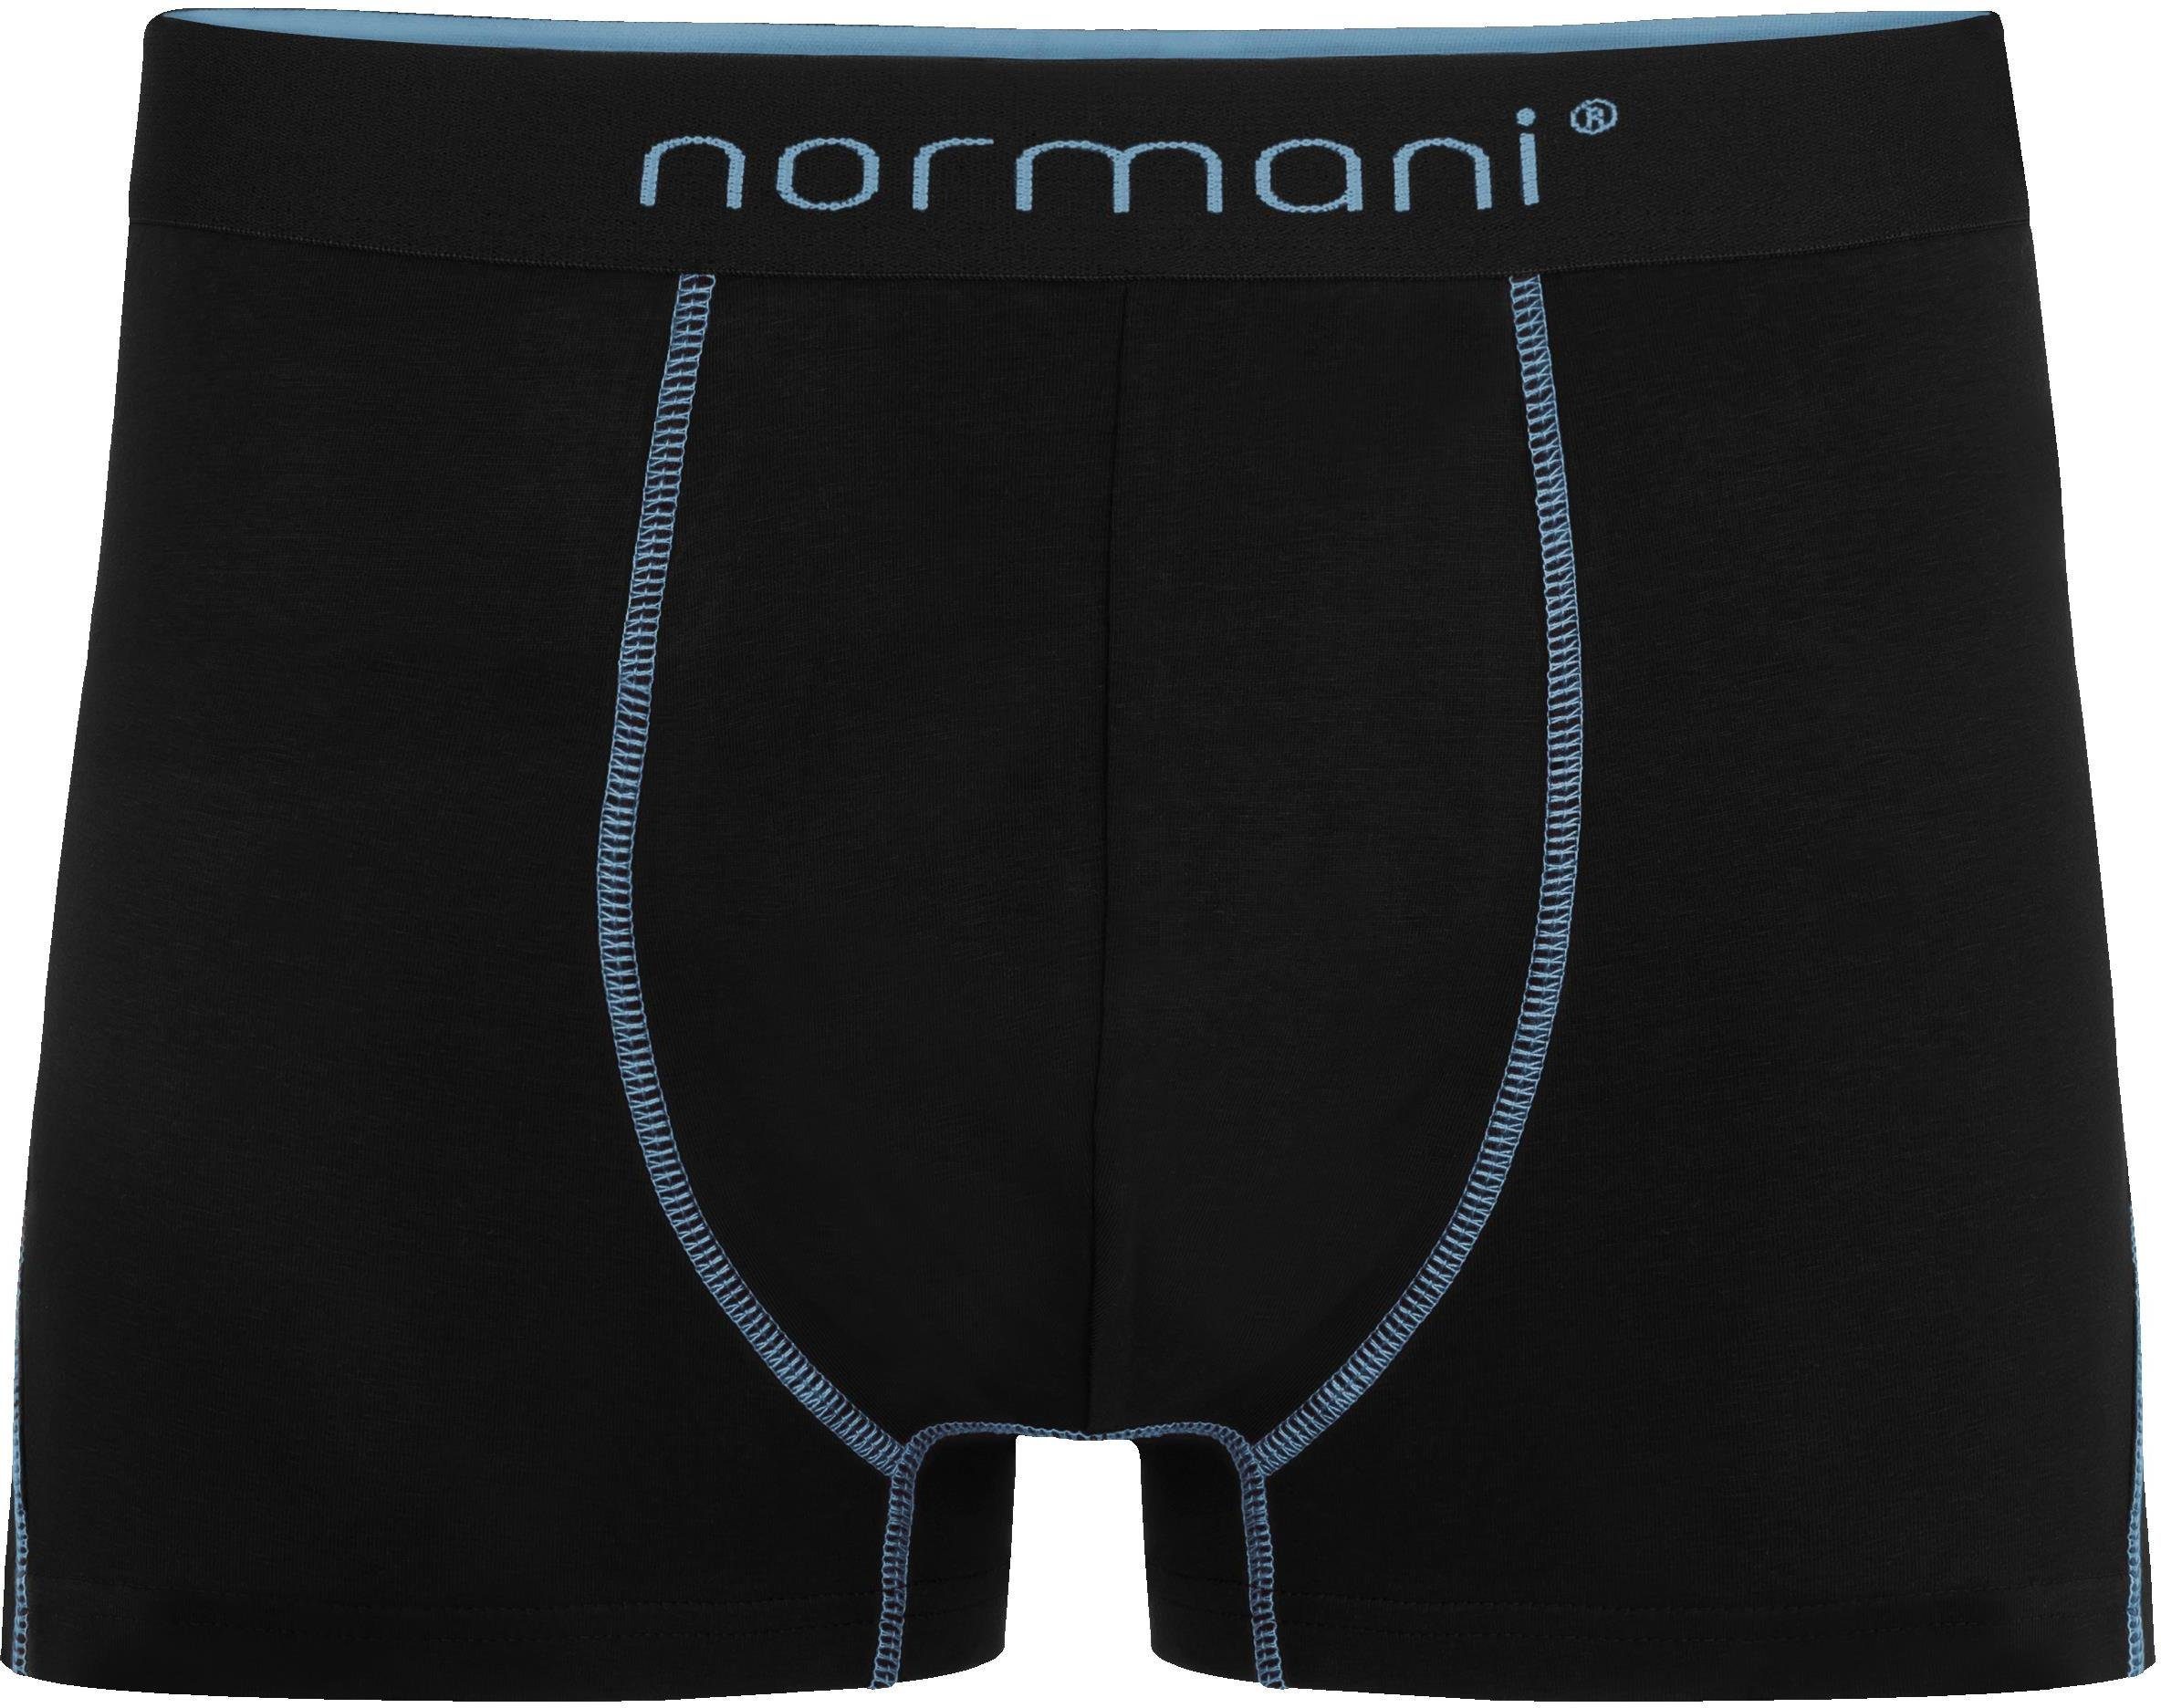 Herren Unterhose Hellblau Boxershorts Baumwoll-Boxershorts 12 normani x für atmungsaktiver aus Baumwolle Männer